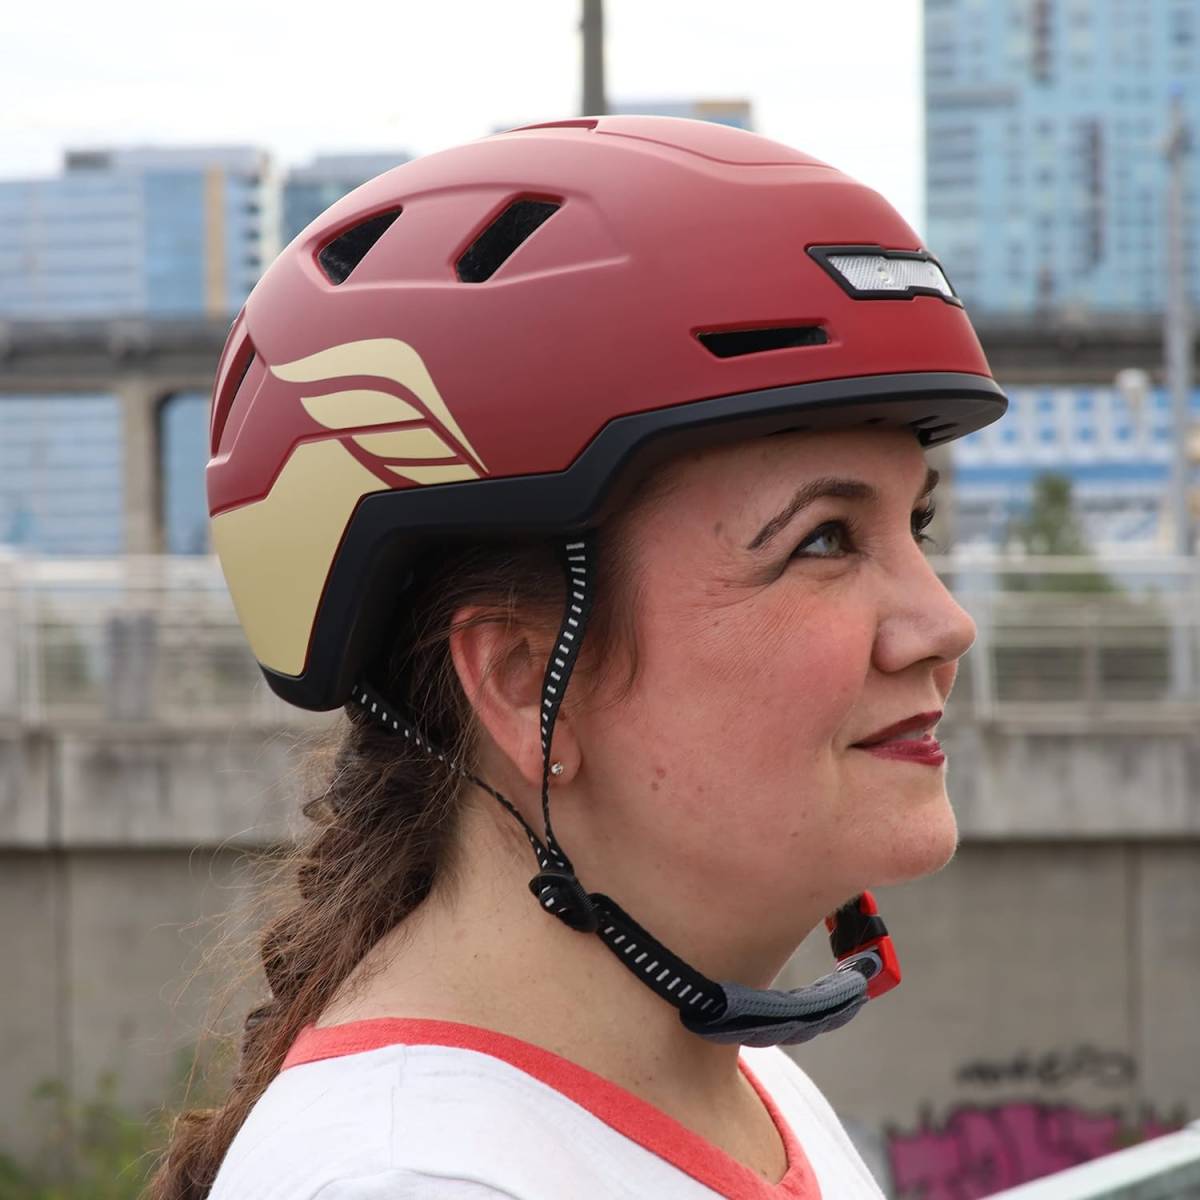 Valkyrie | XNITO Helmet | E-bike Helmet